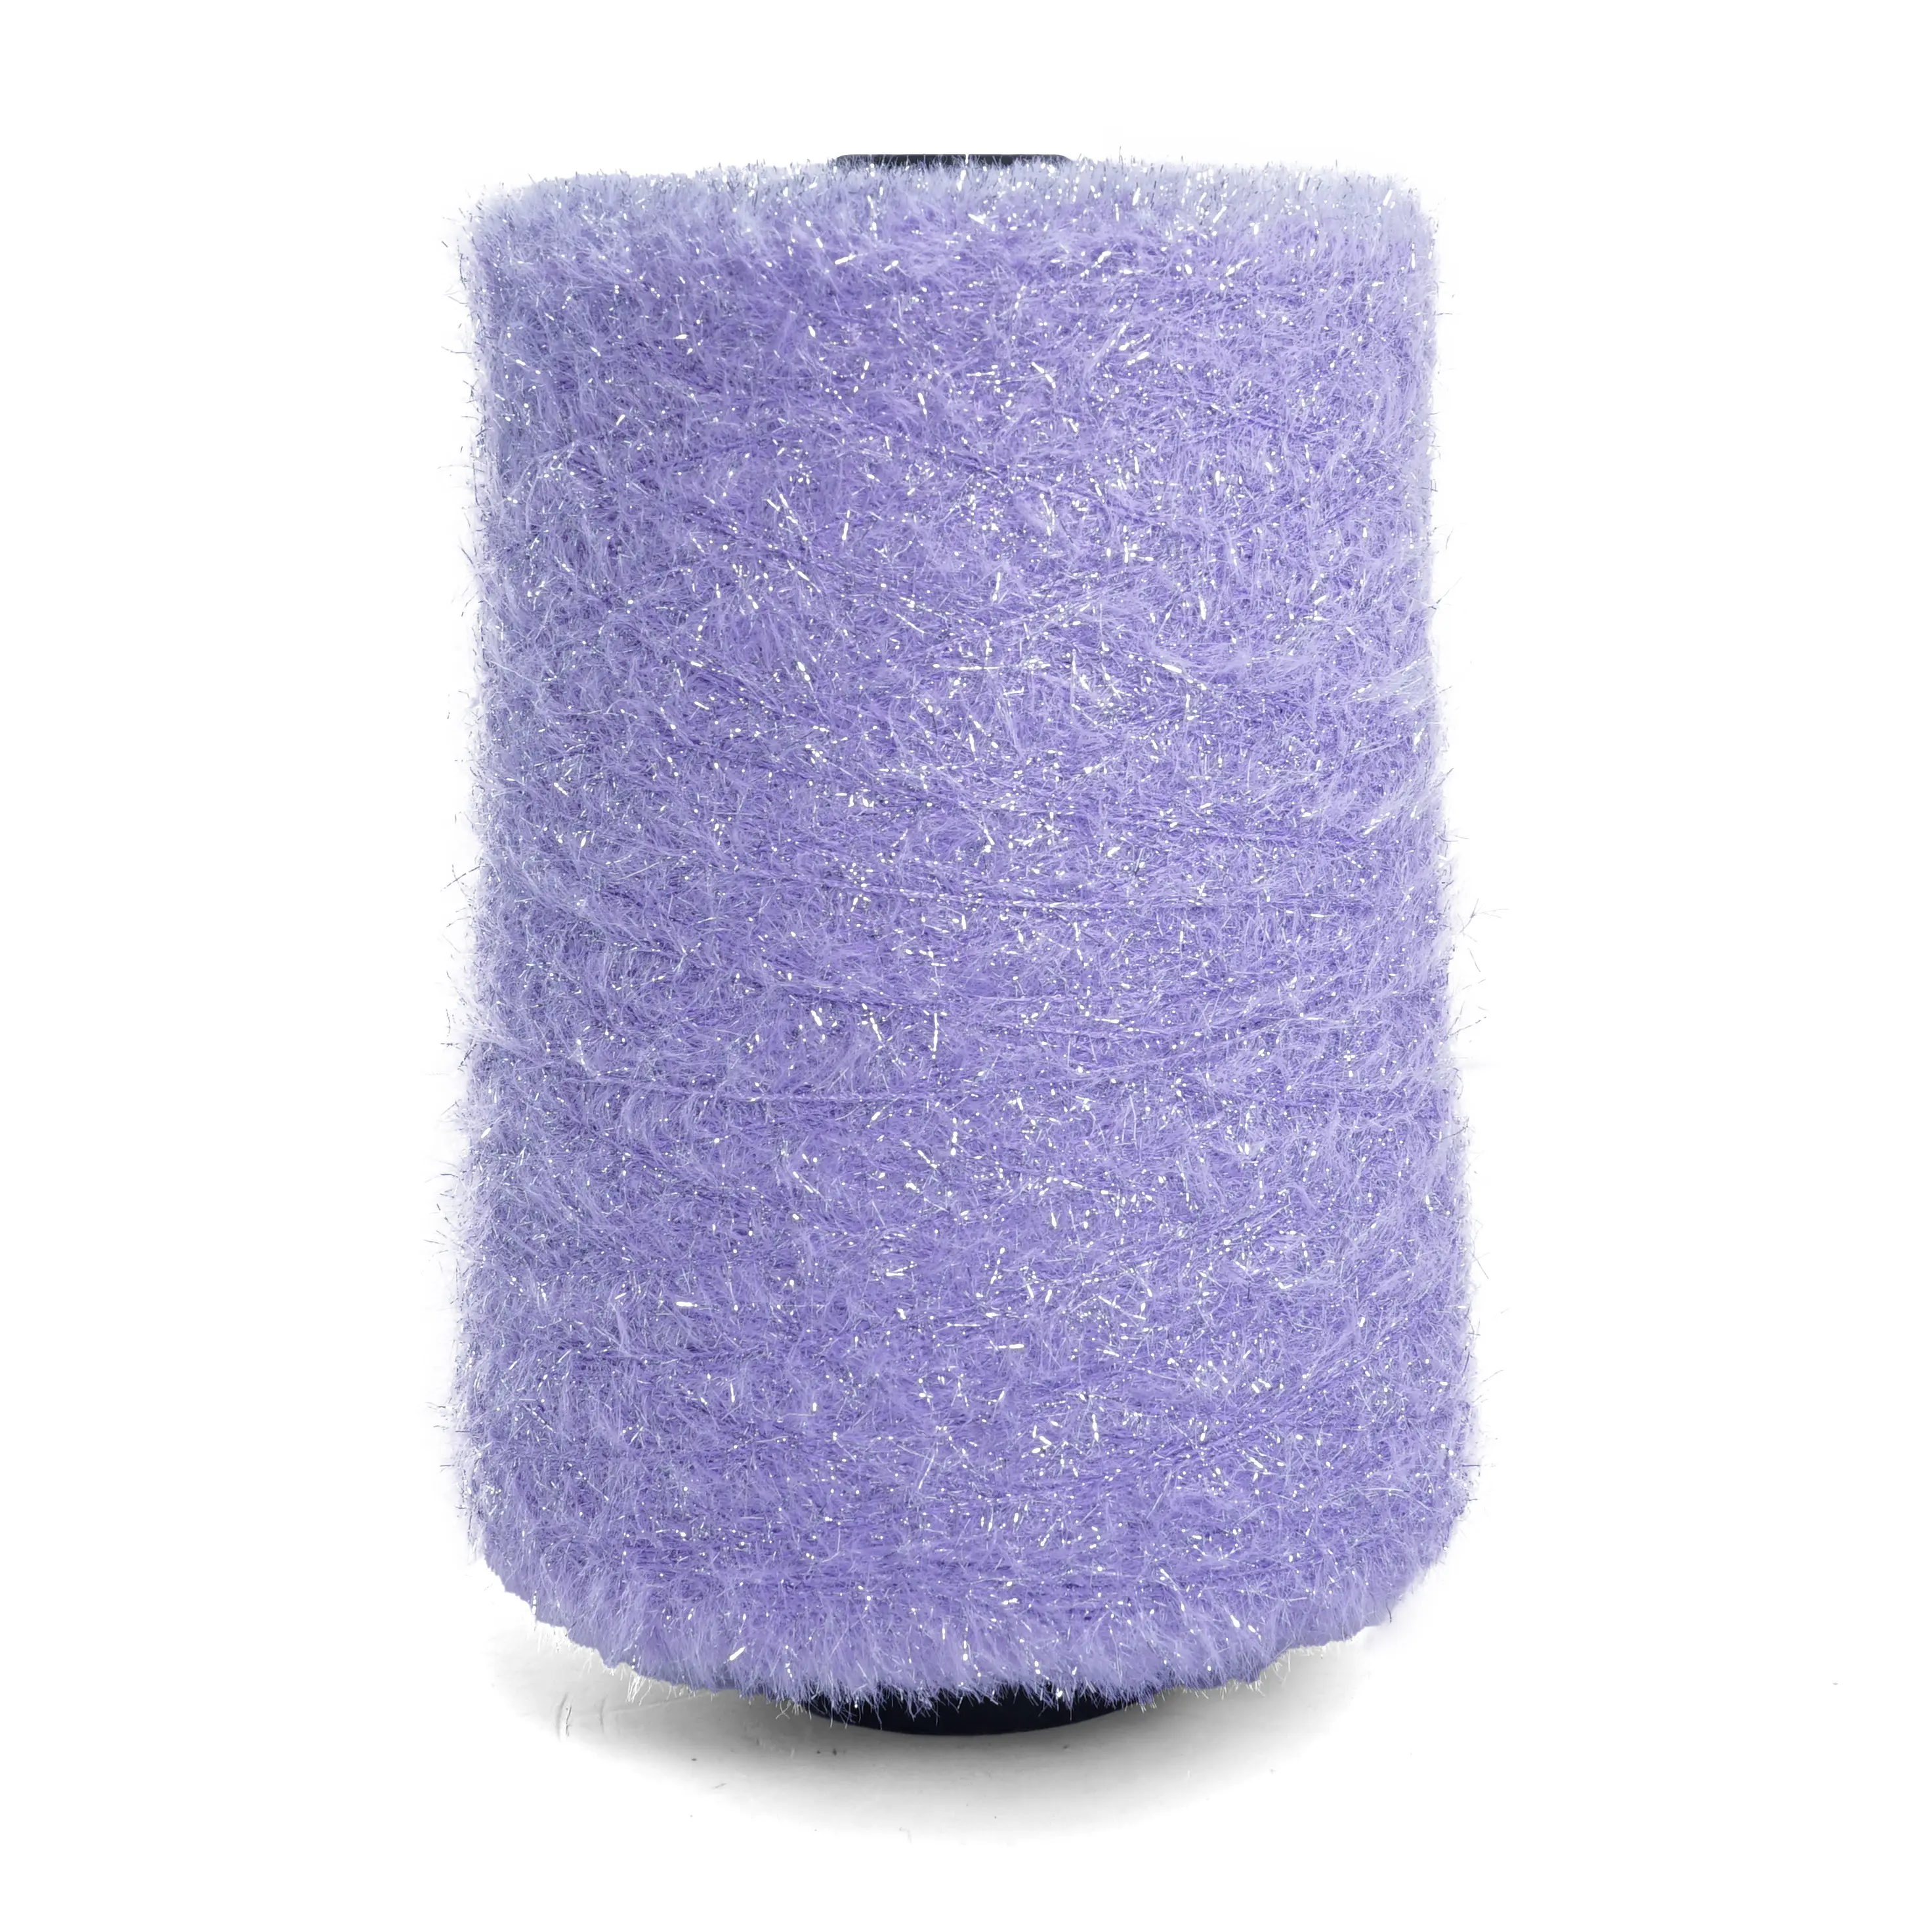 11 мм мягкая Серебристая имитация норки пряжа для вязания пальто свитера нейлоновая перьевая пряжа для смешанной пряжи